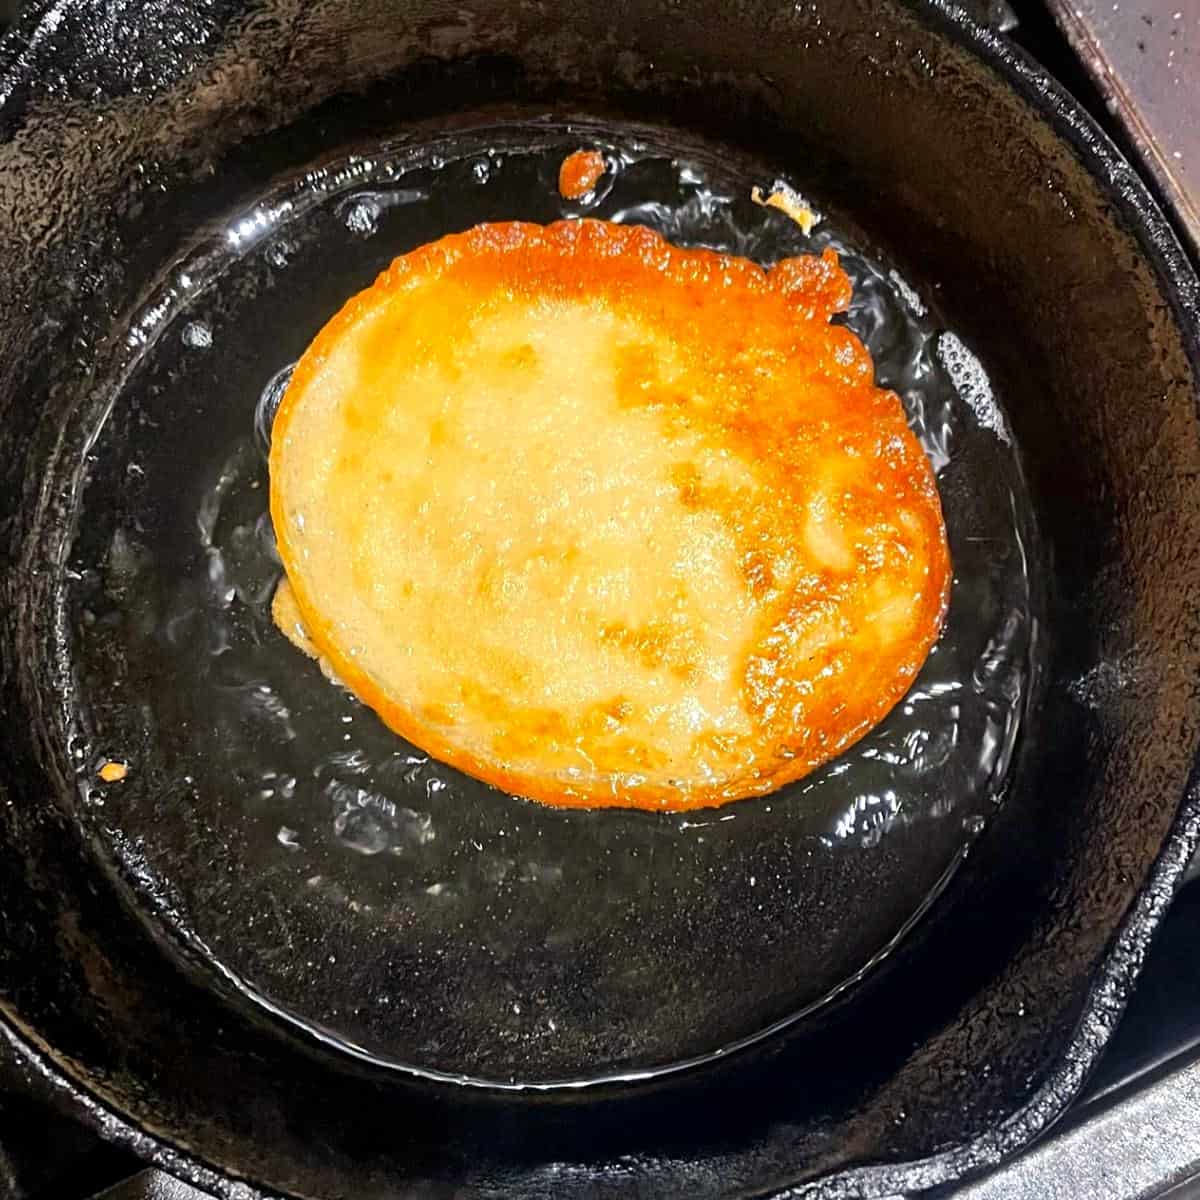 Vegan malpua frying to golden-brown color in cast iron skillet.